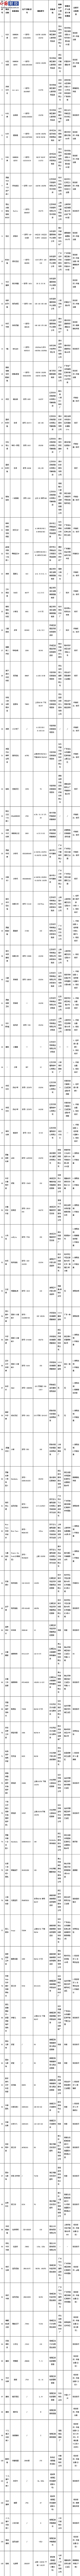 江苏省工商局抽检儿童服装产品 不合格率46.7%0.jpg